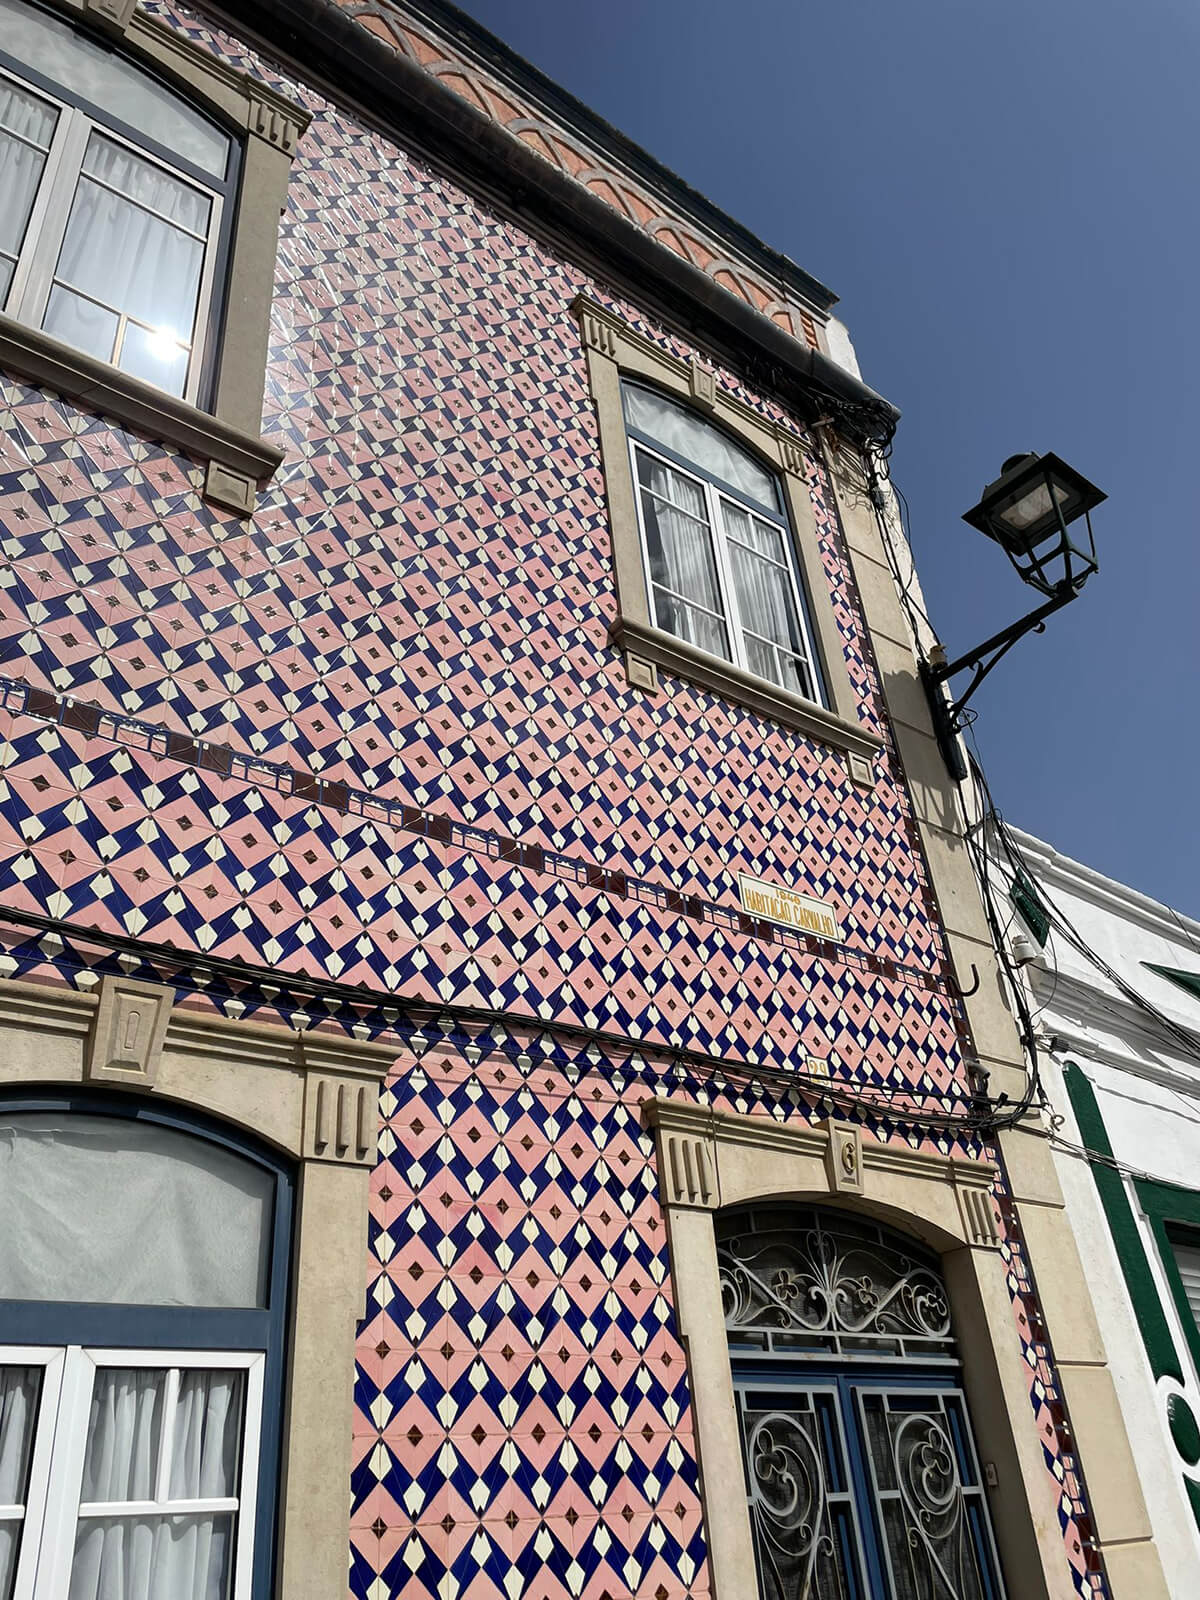 IMG 20230717 WA0025 - L’azulejo, le trésor décoratif du Portugal